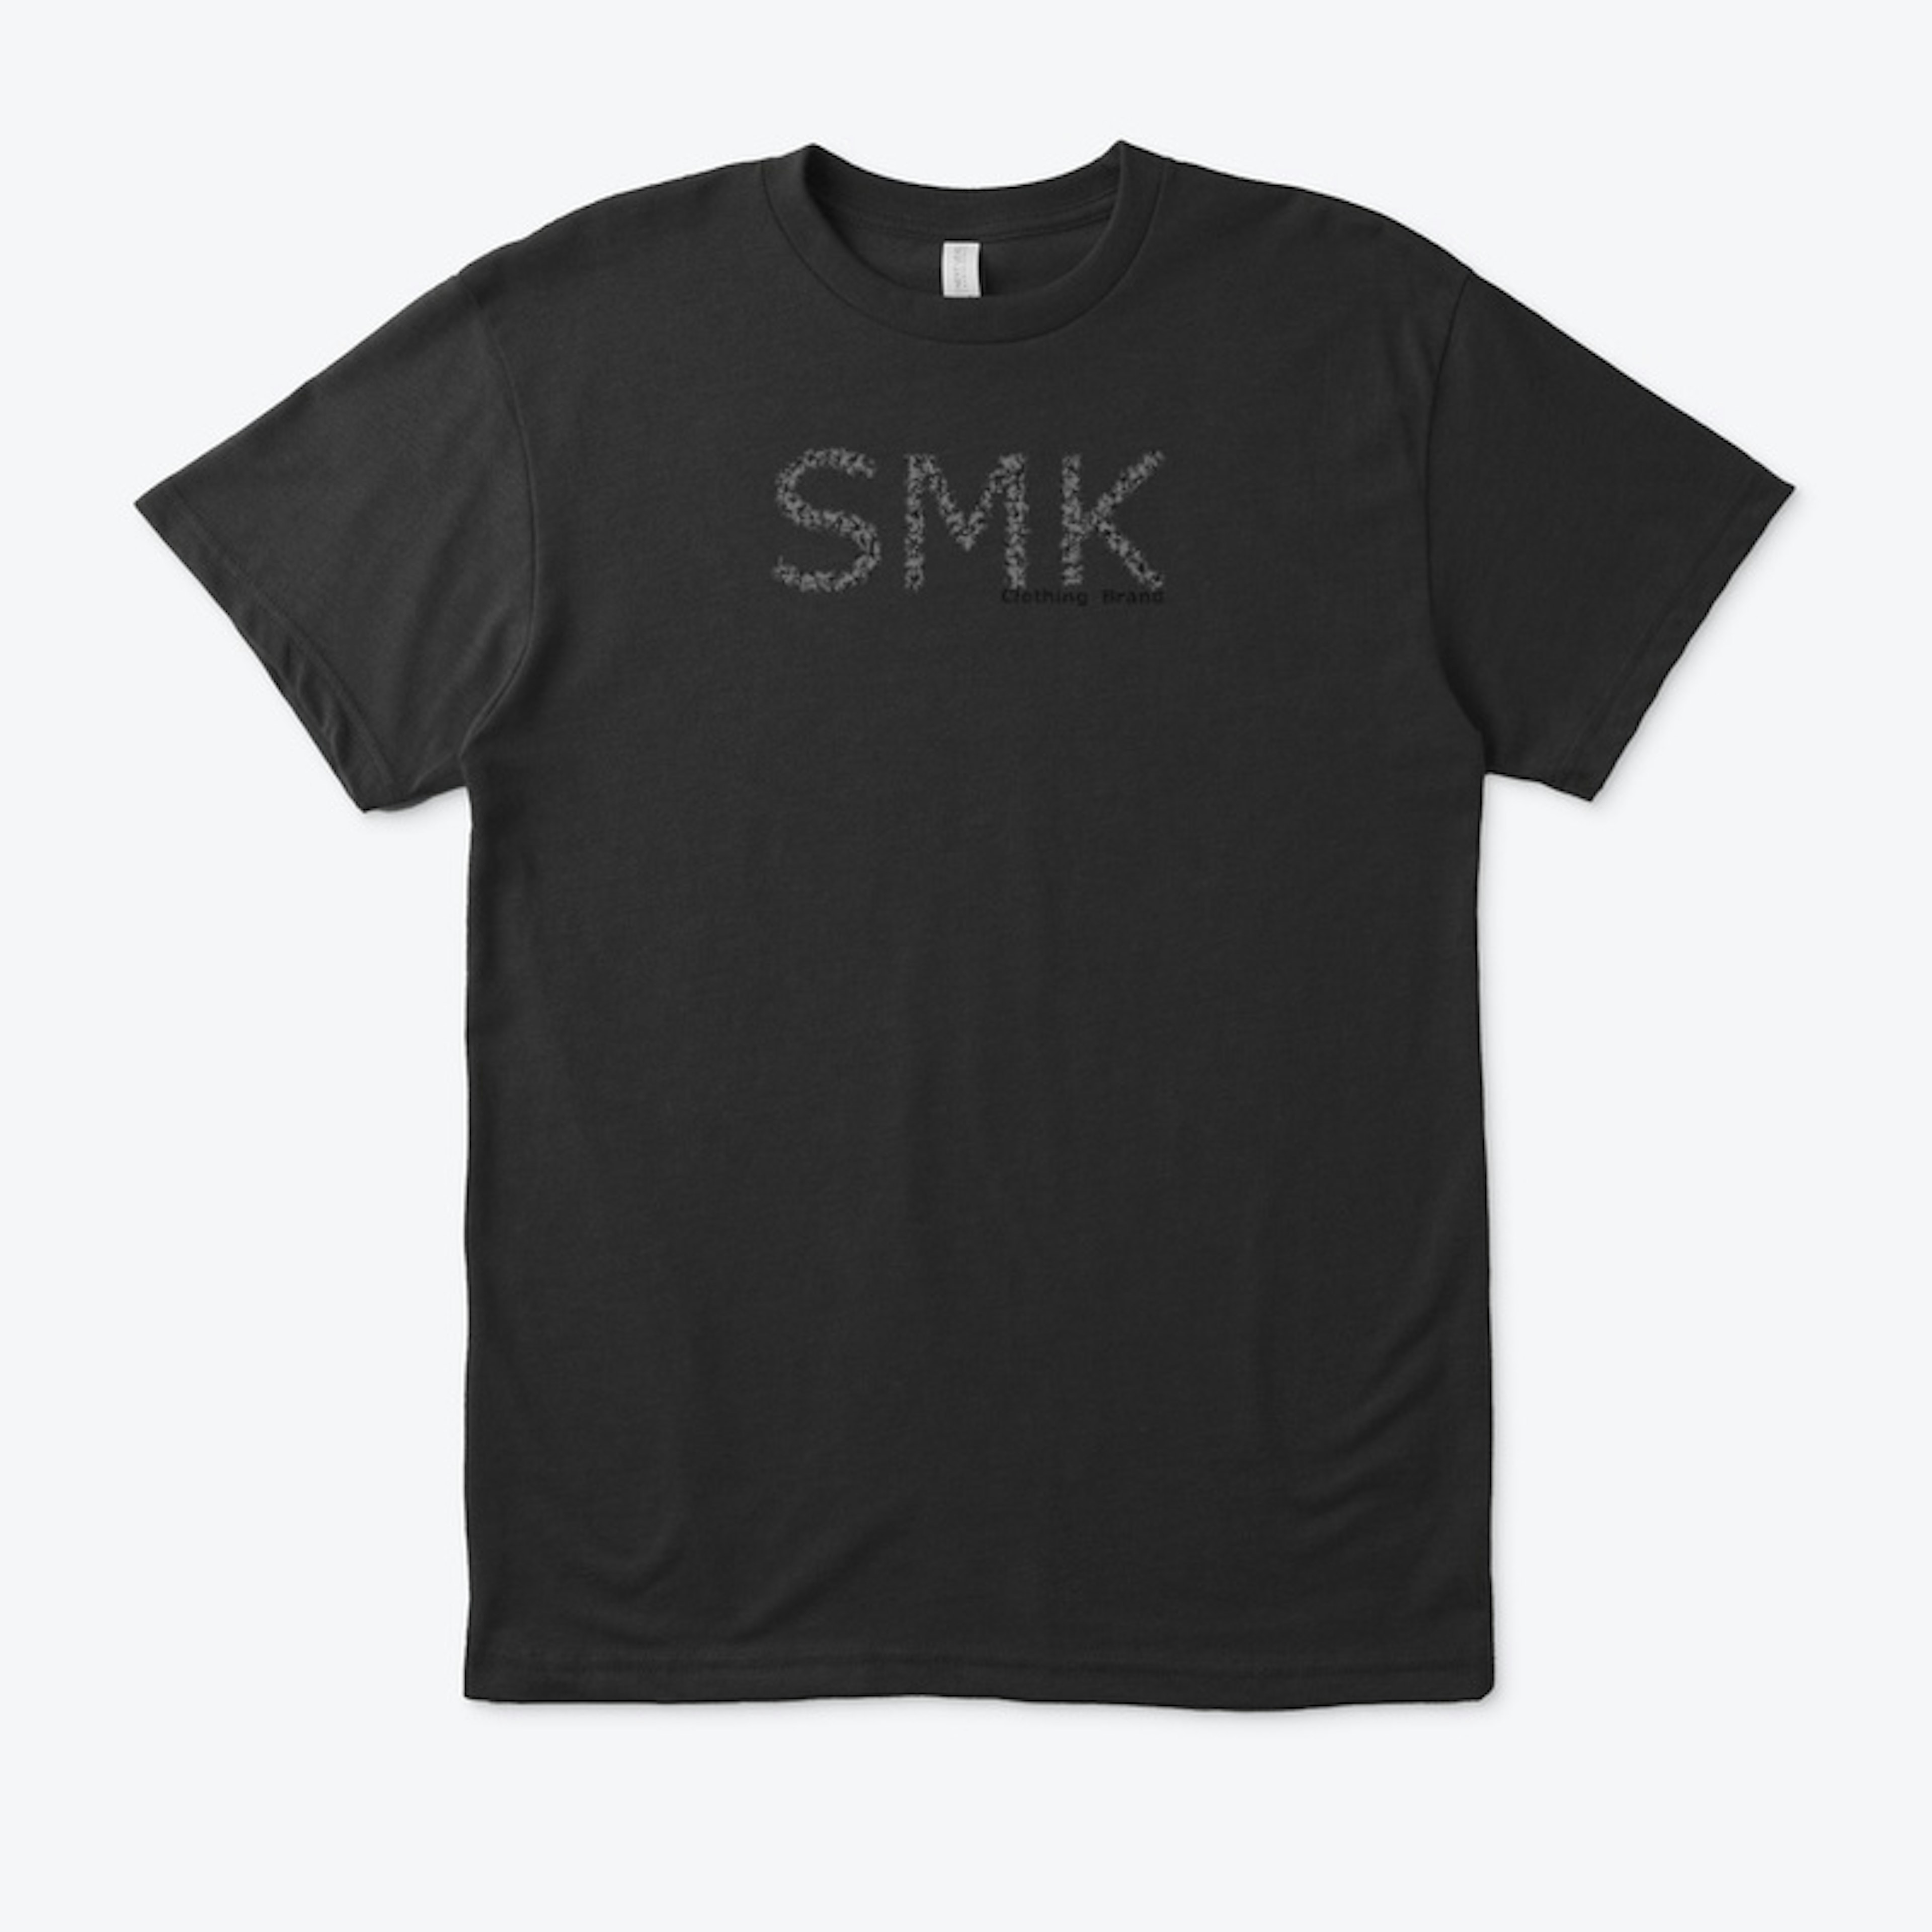 Classic SMK Logo Design